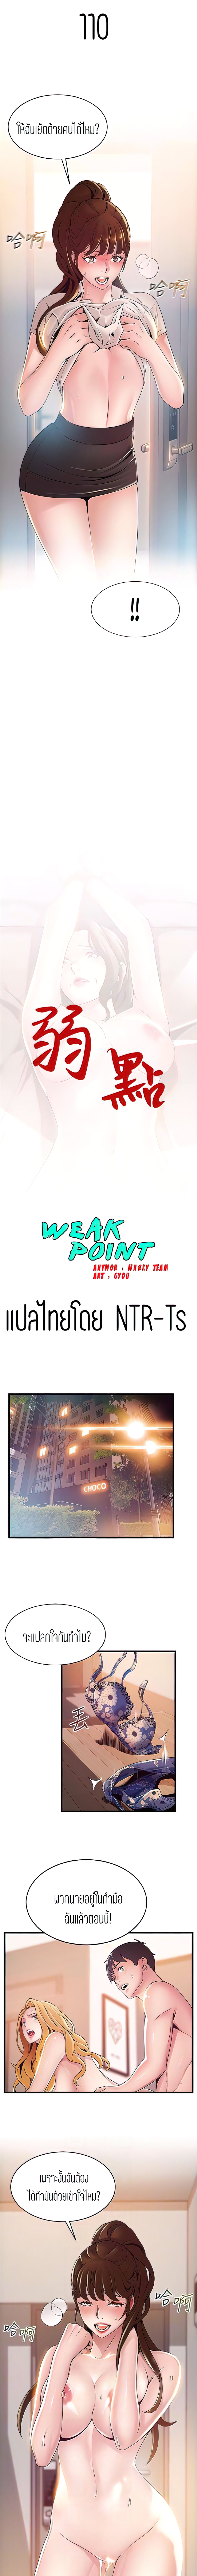 Weak Point110 (1)